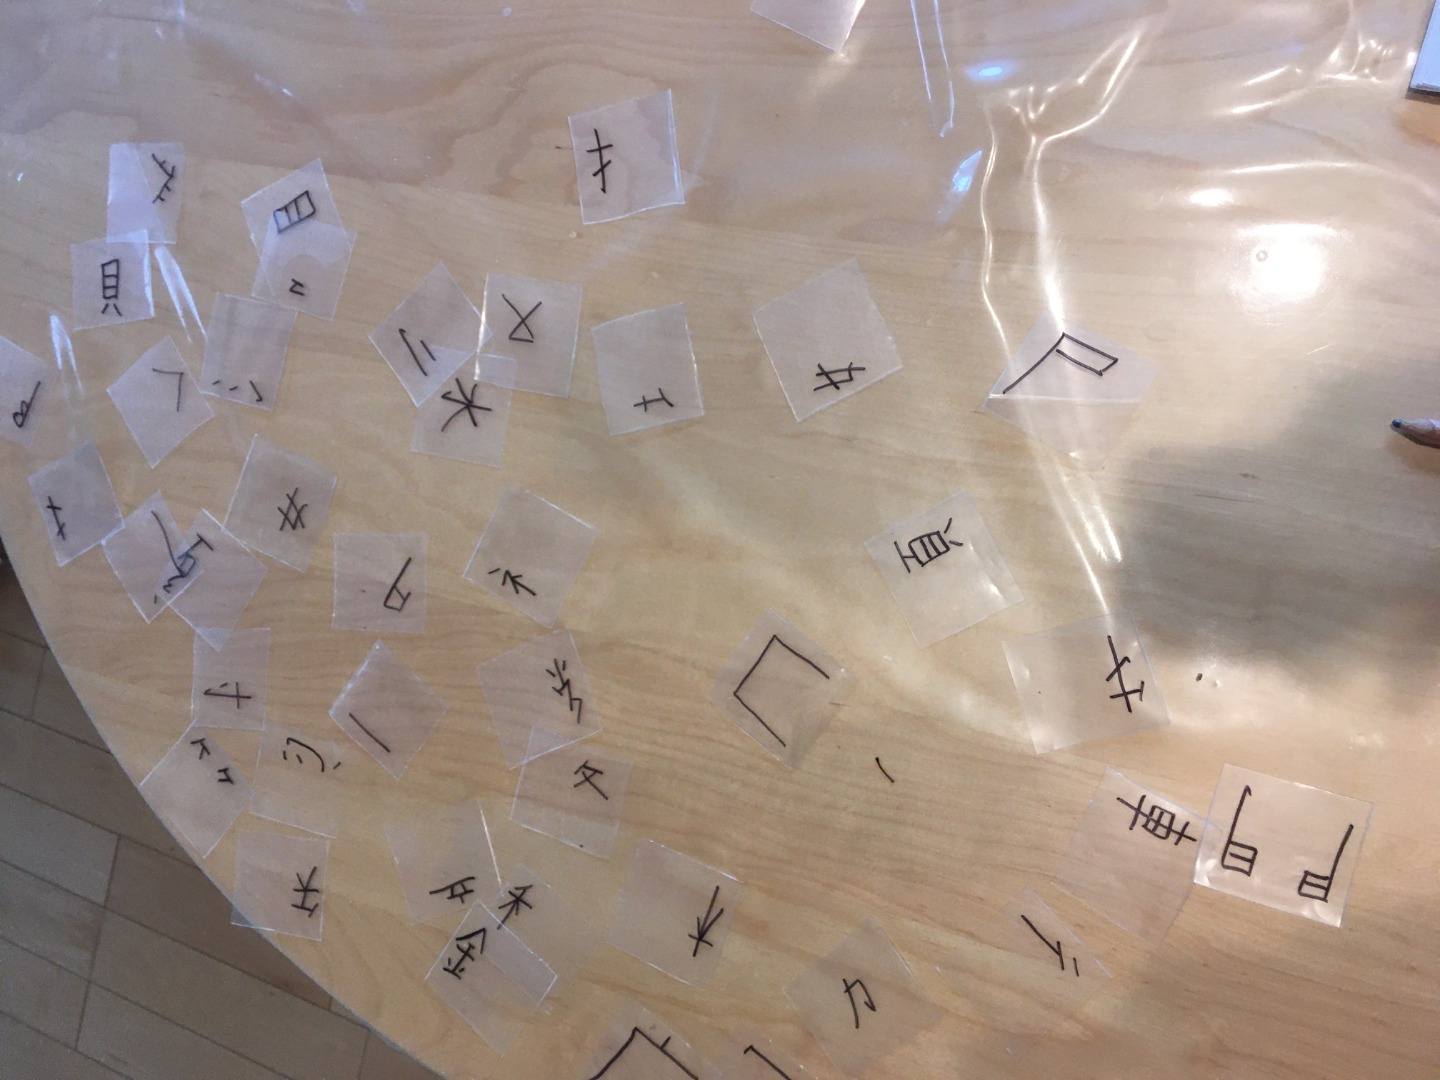 kanji parts on transparent plastic sheets